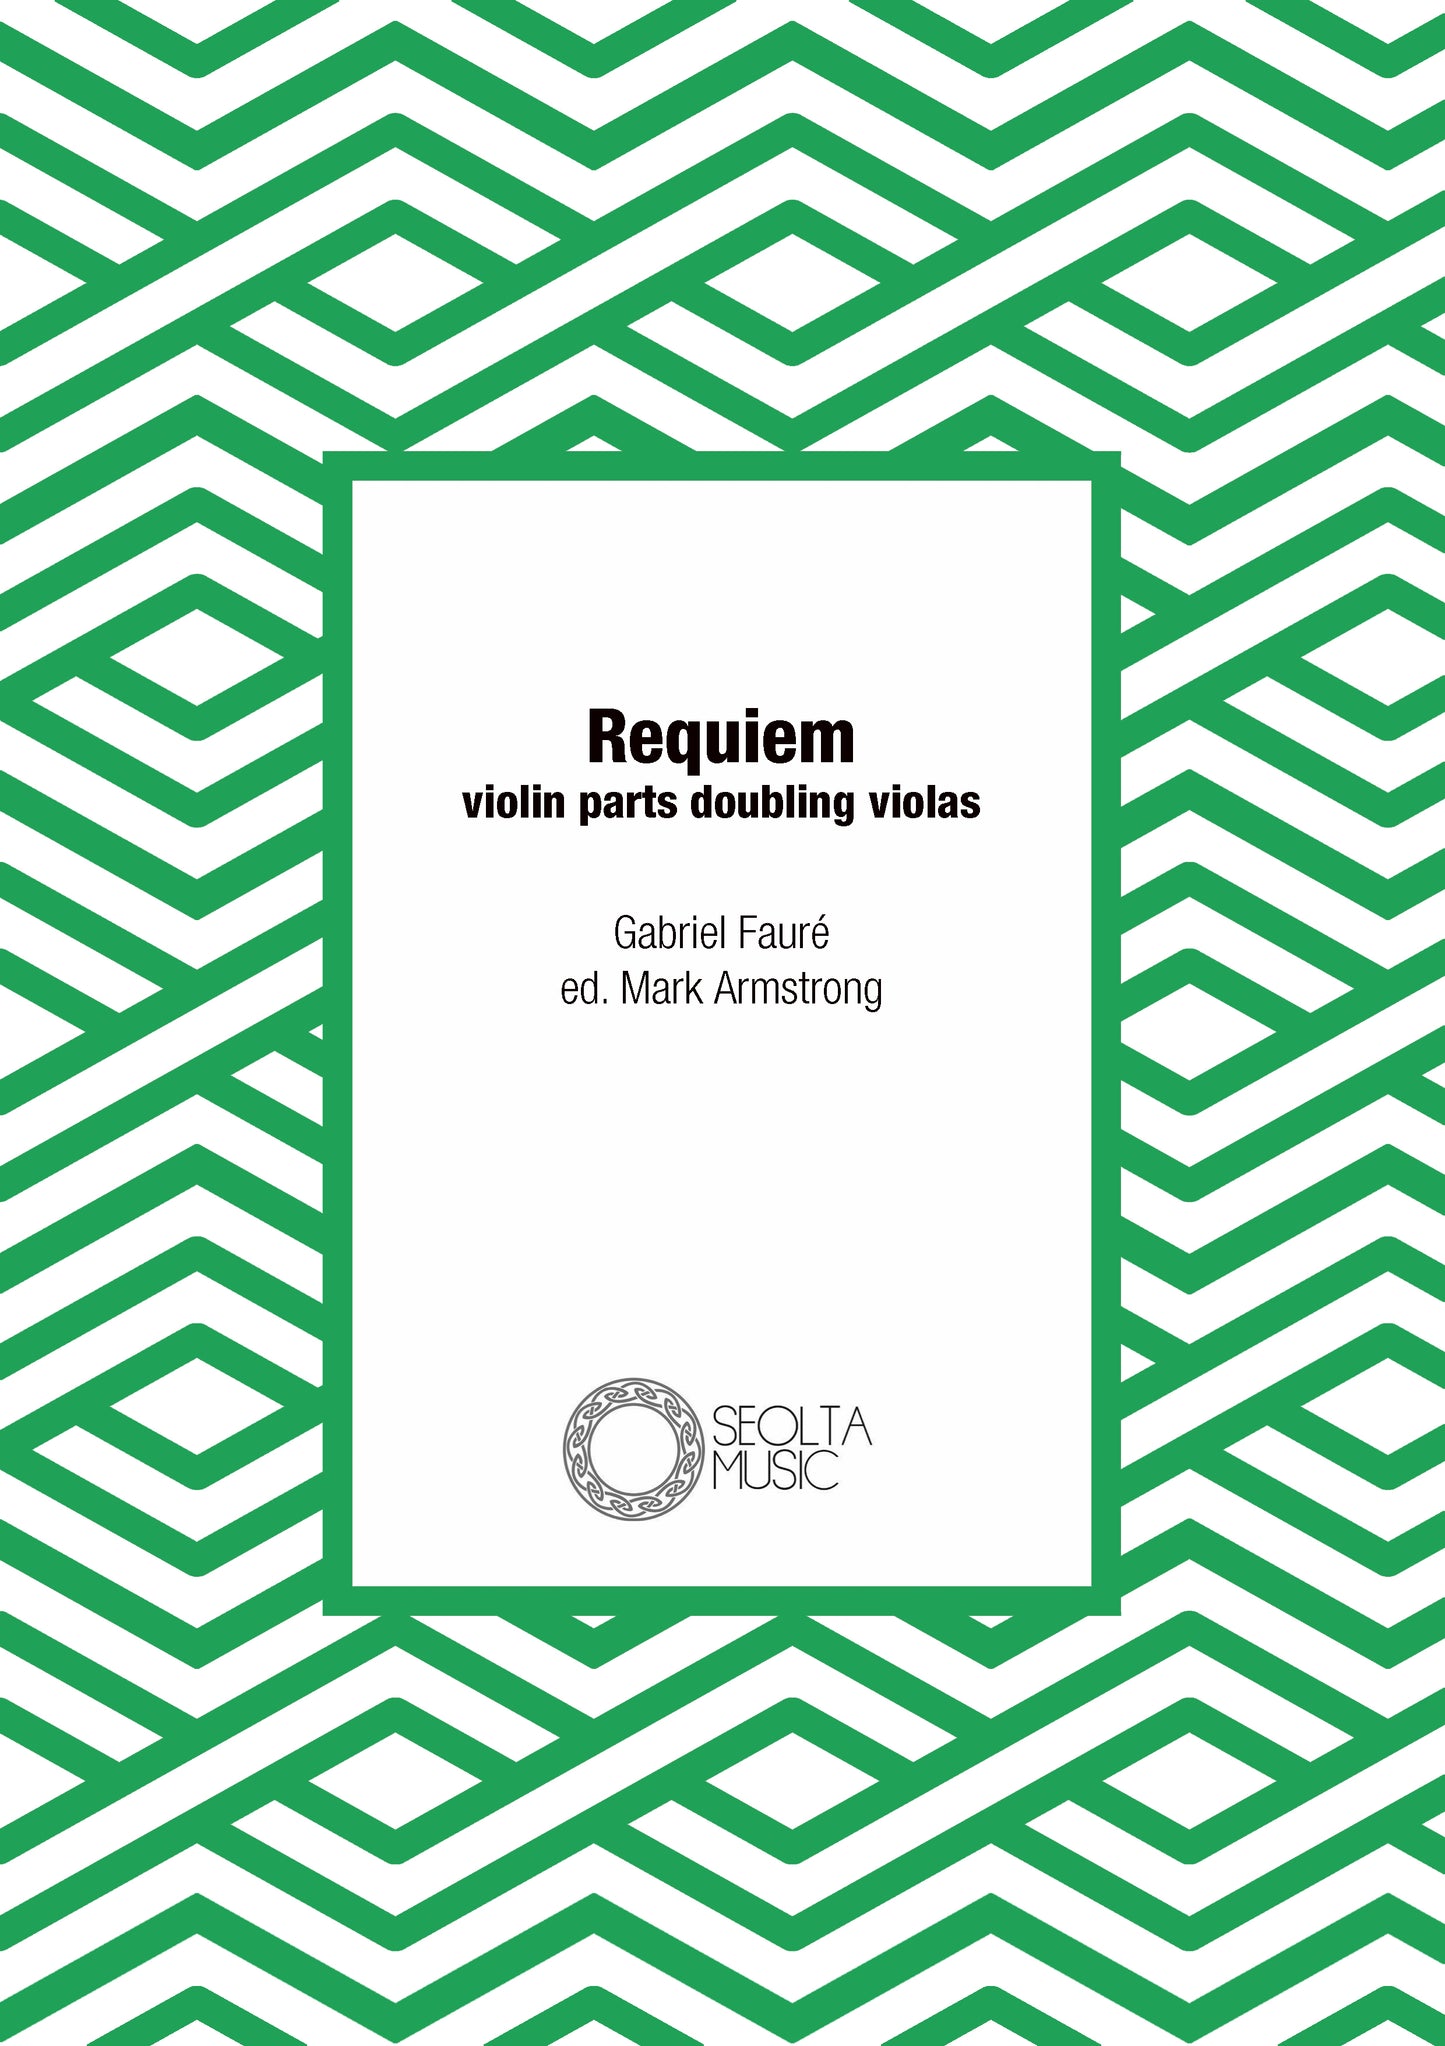 faure-requiem-orchestral-violin-parts-doubling-violas